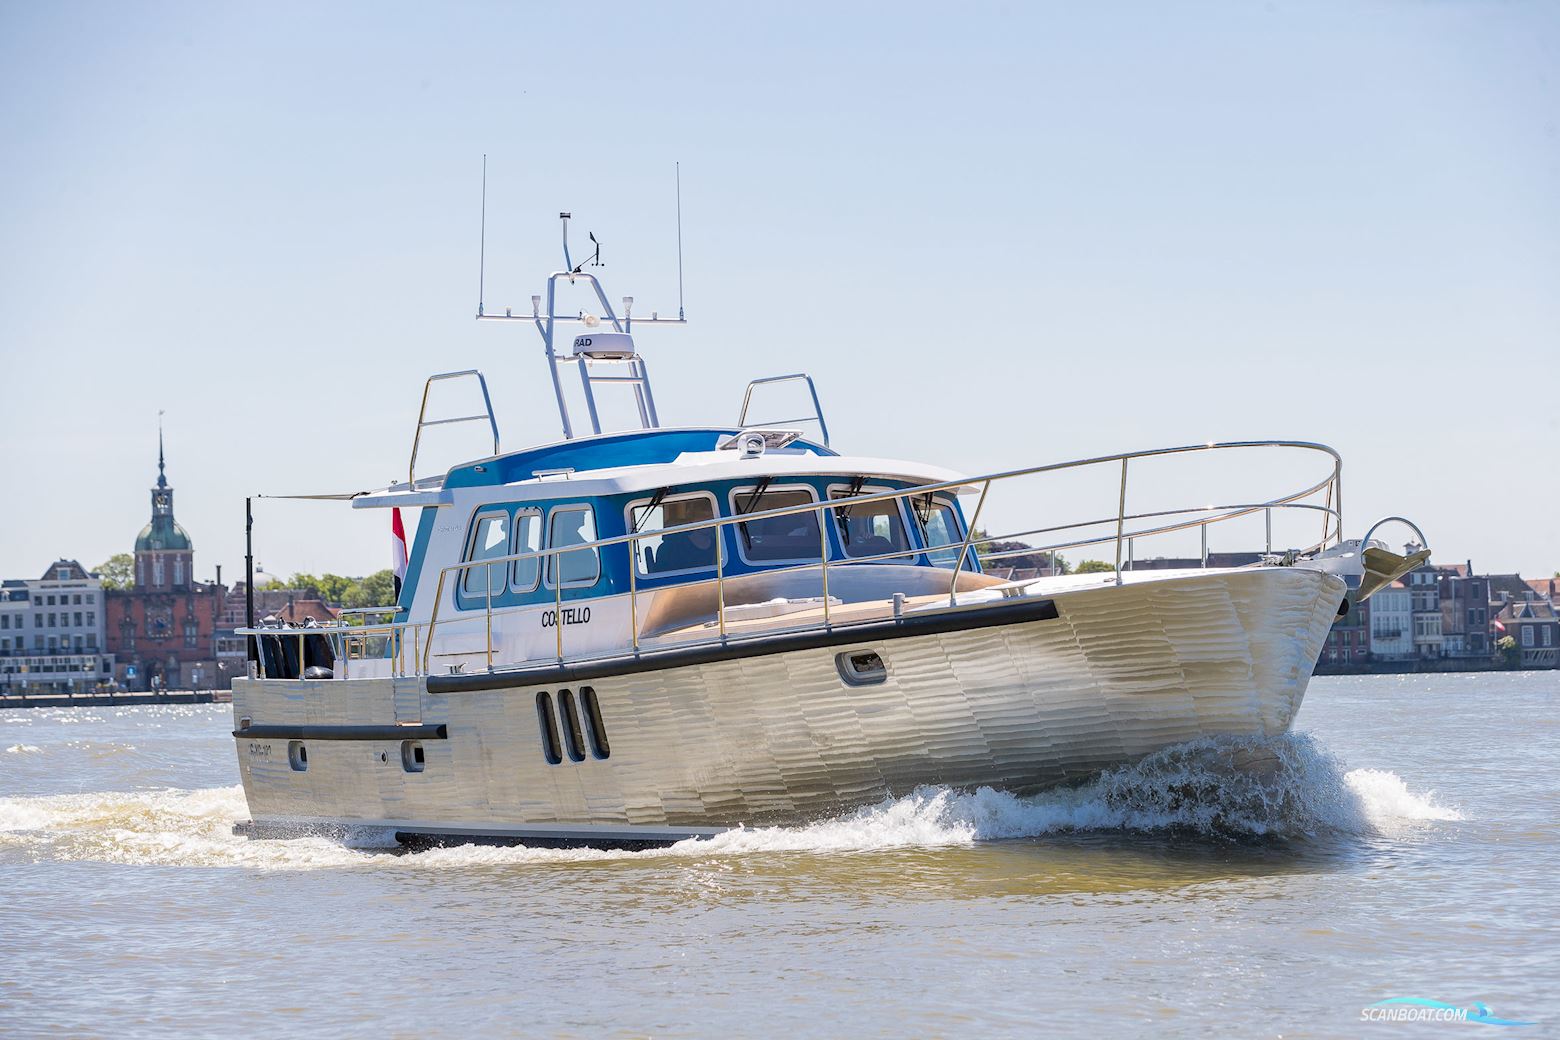 Deep Water Yachts Korvet14Clr Motorboot 2022, mit Volvopenta motor, Niederlande